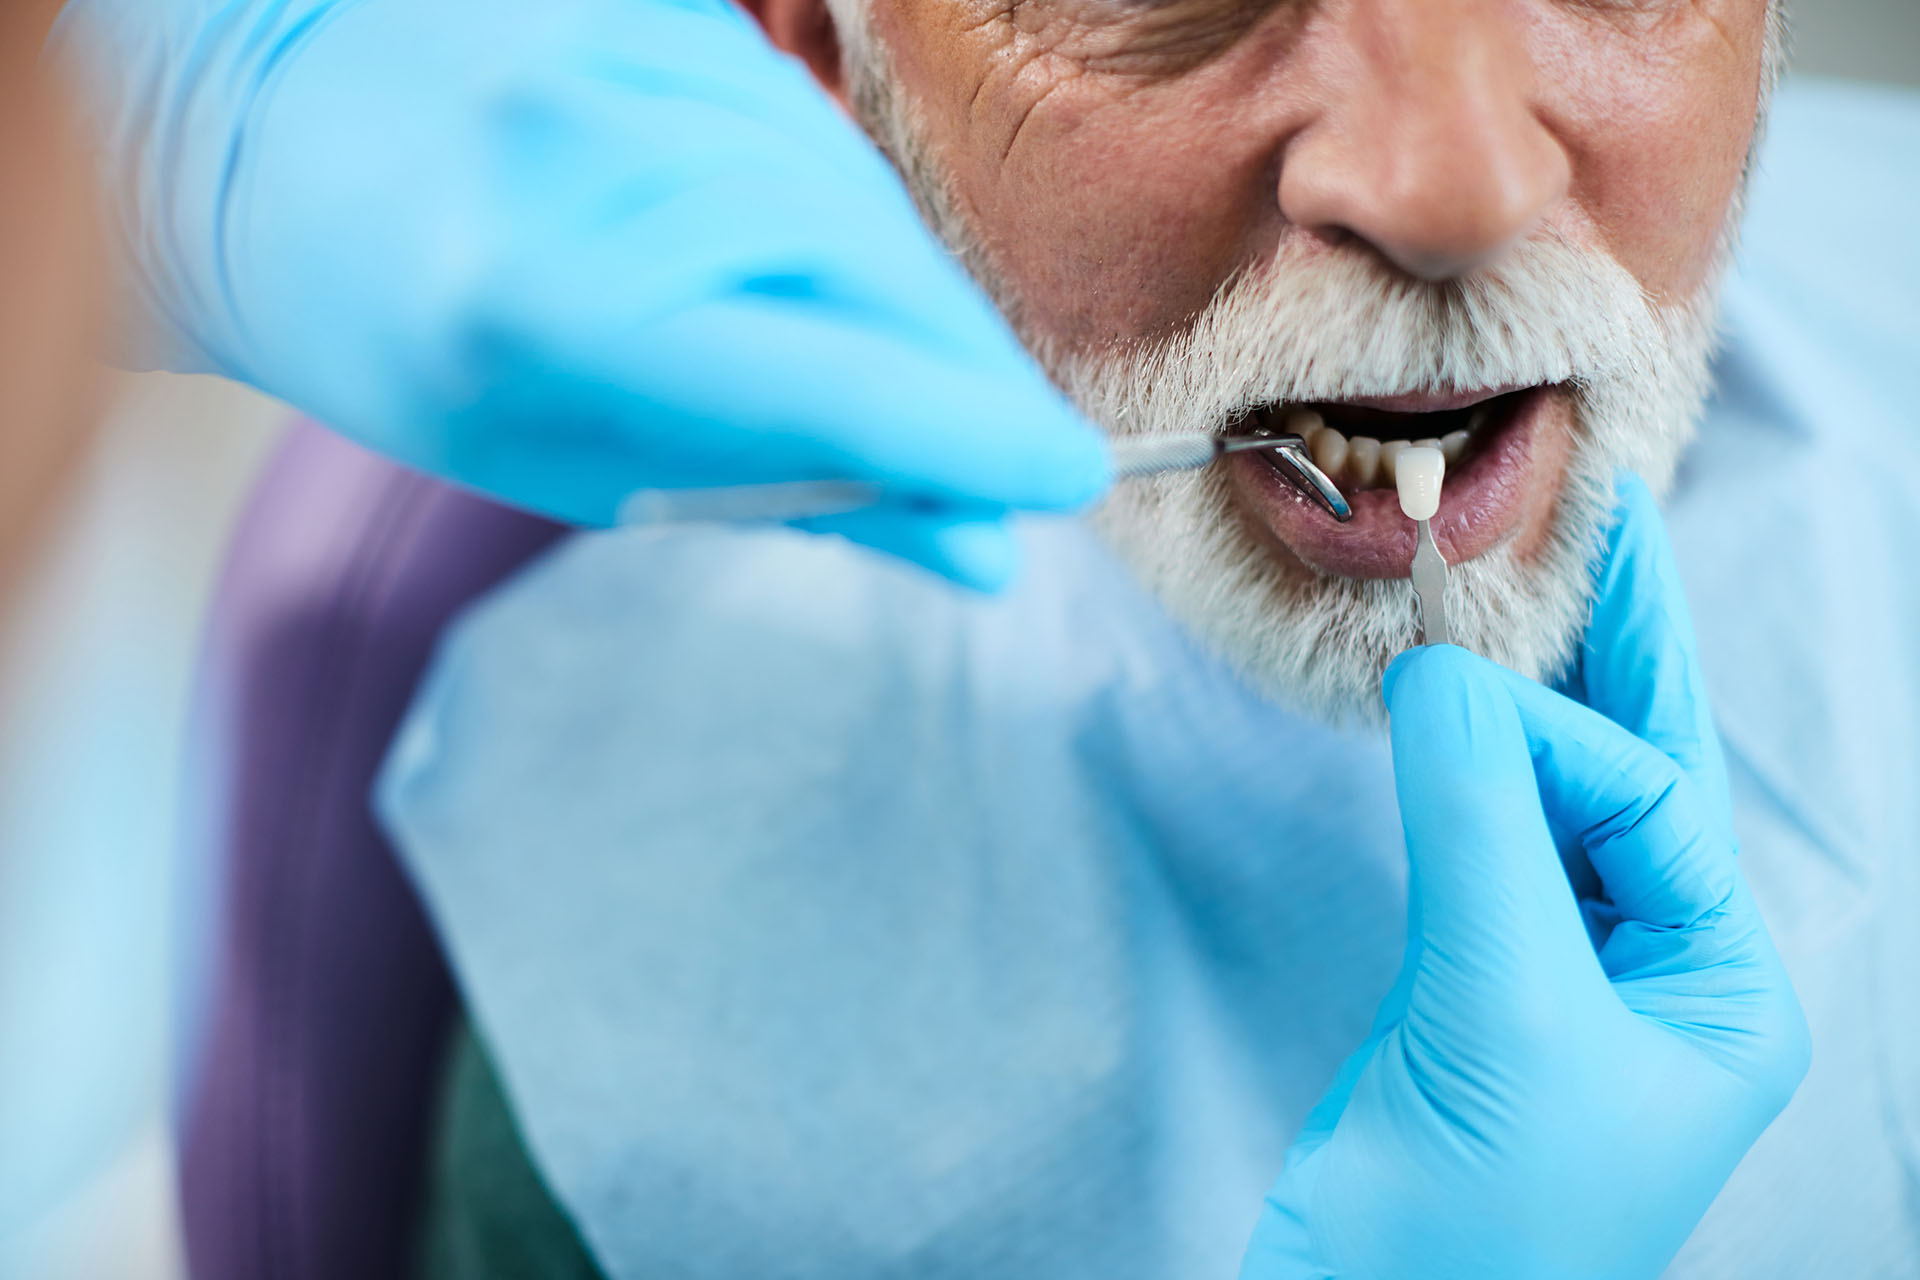 Clínica Dental Andrea Compte, tu Centro Odontológico especializado. Implantes dentales (Implantología) en Alcalá de Xivert. Dentista implantando carillas dentales a paciente.